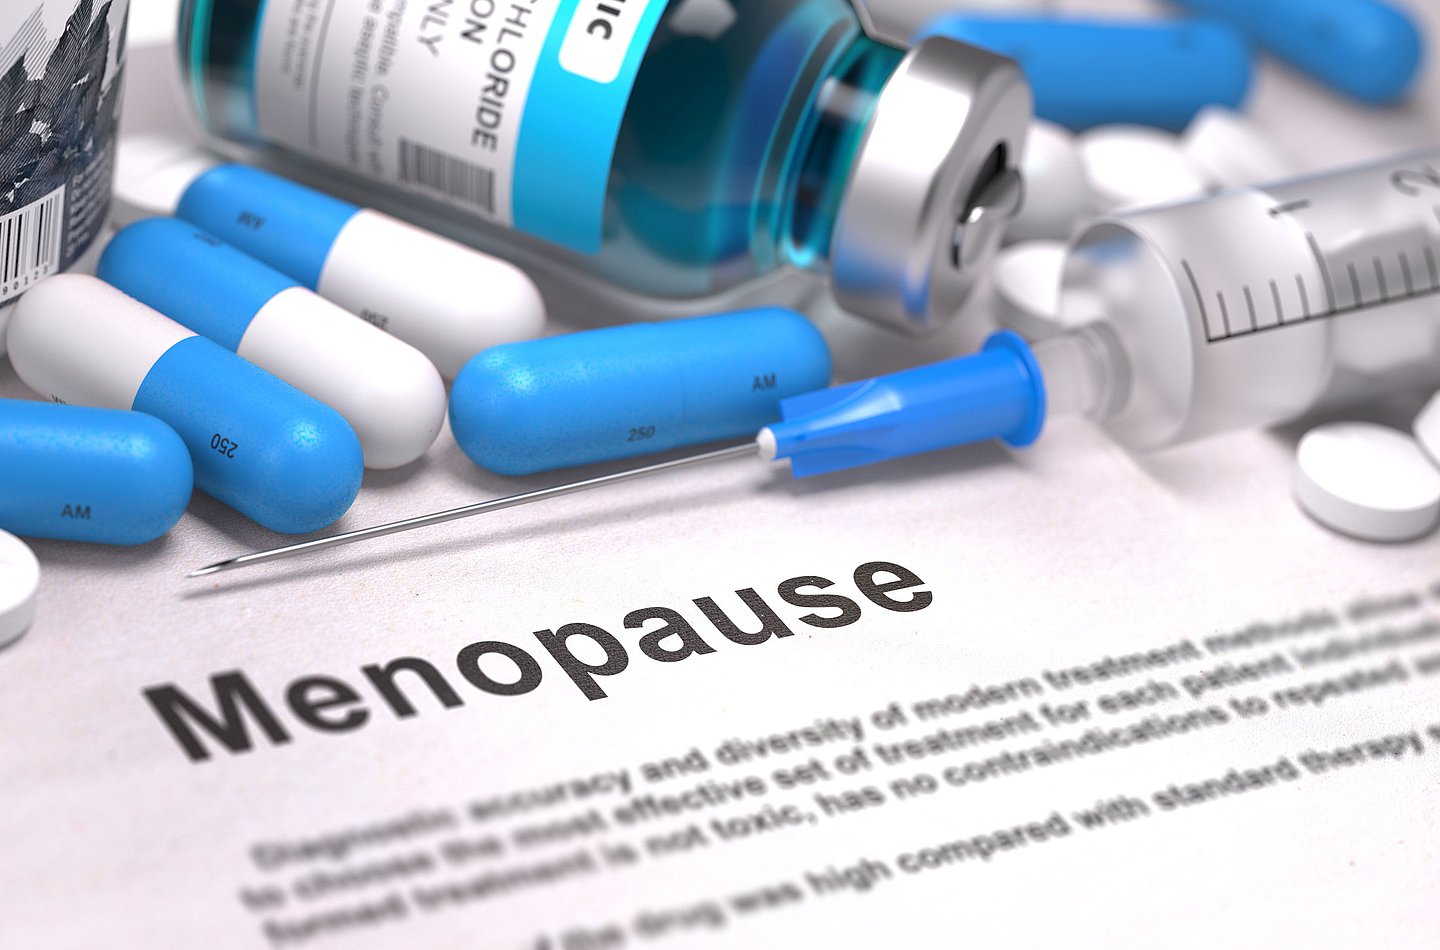 Foto  zeigt Kapseln und Tabletten auf einer Unterlage, dazwischen ein Zettel mit der Aufschrift 'Menopause'.